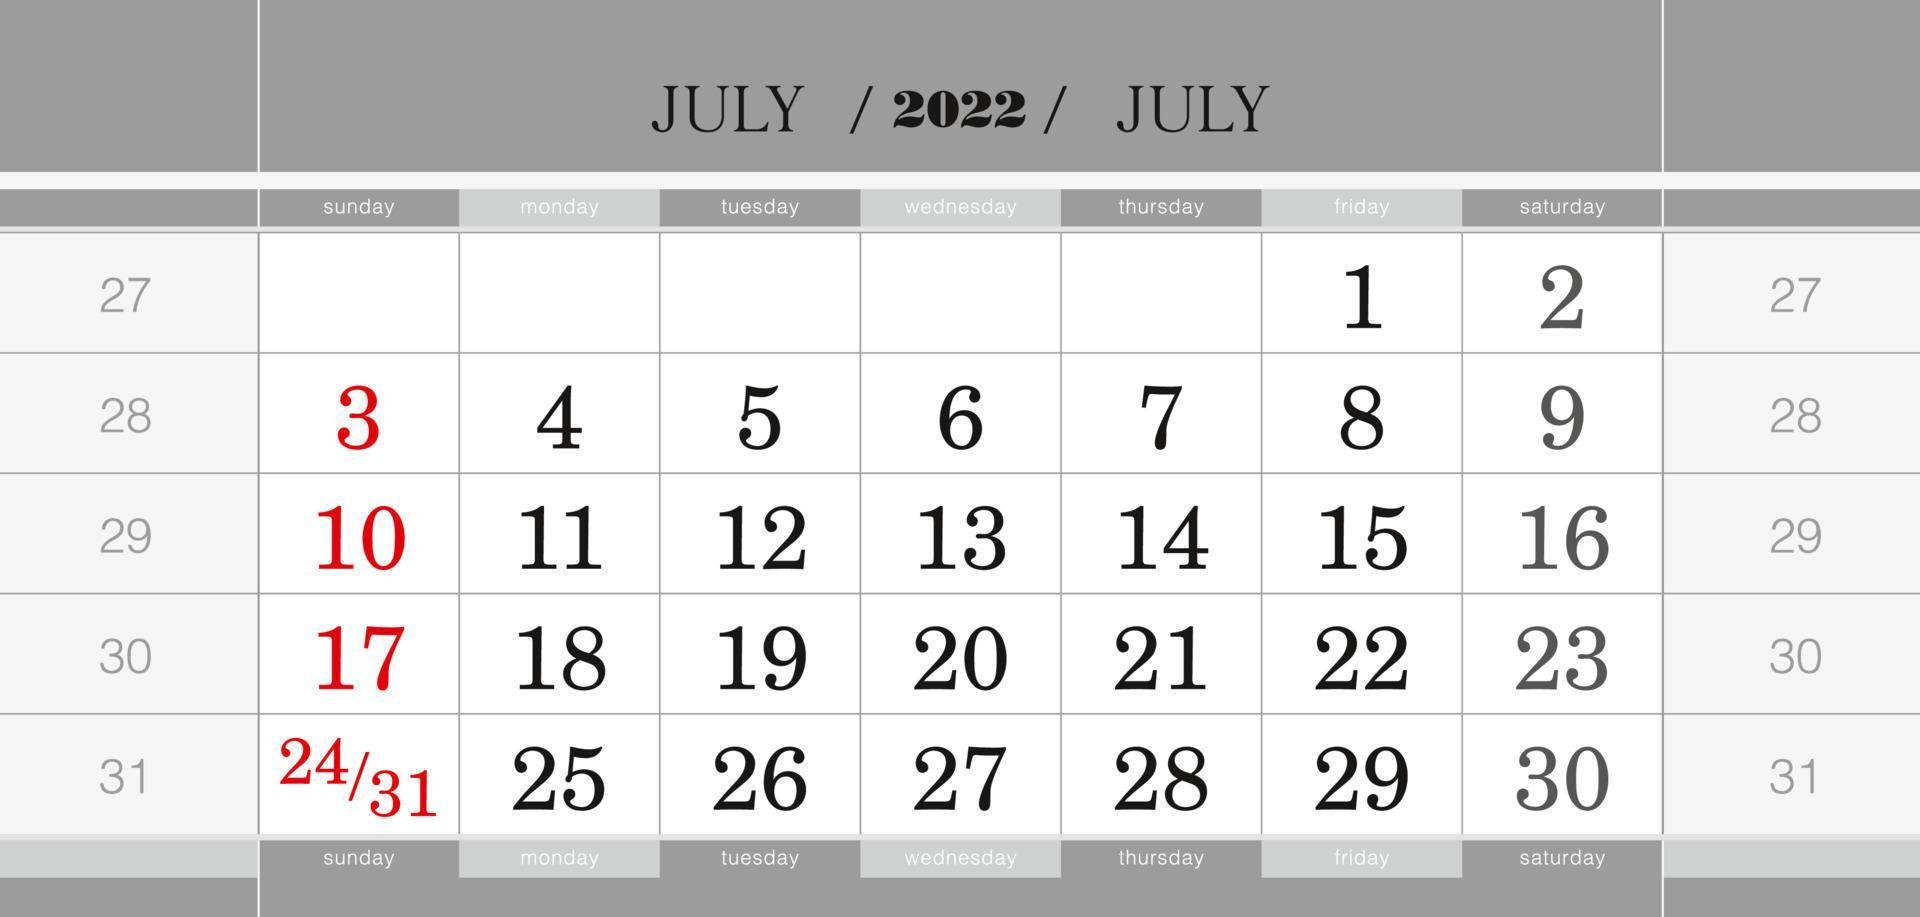 blocco calendario trimestrale luglio 2022. calendario da parete in inglese, la settimana inizia da domenica. vettore